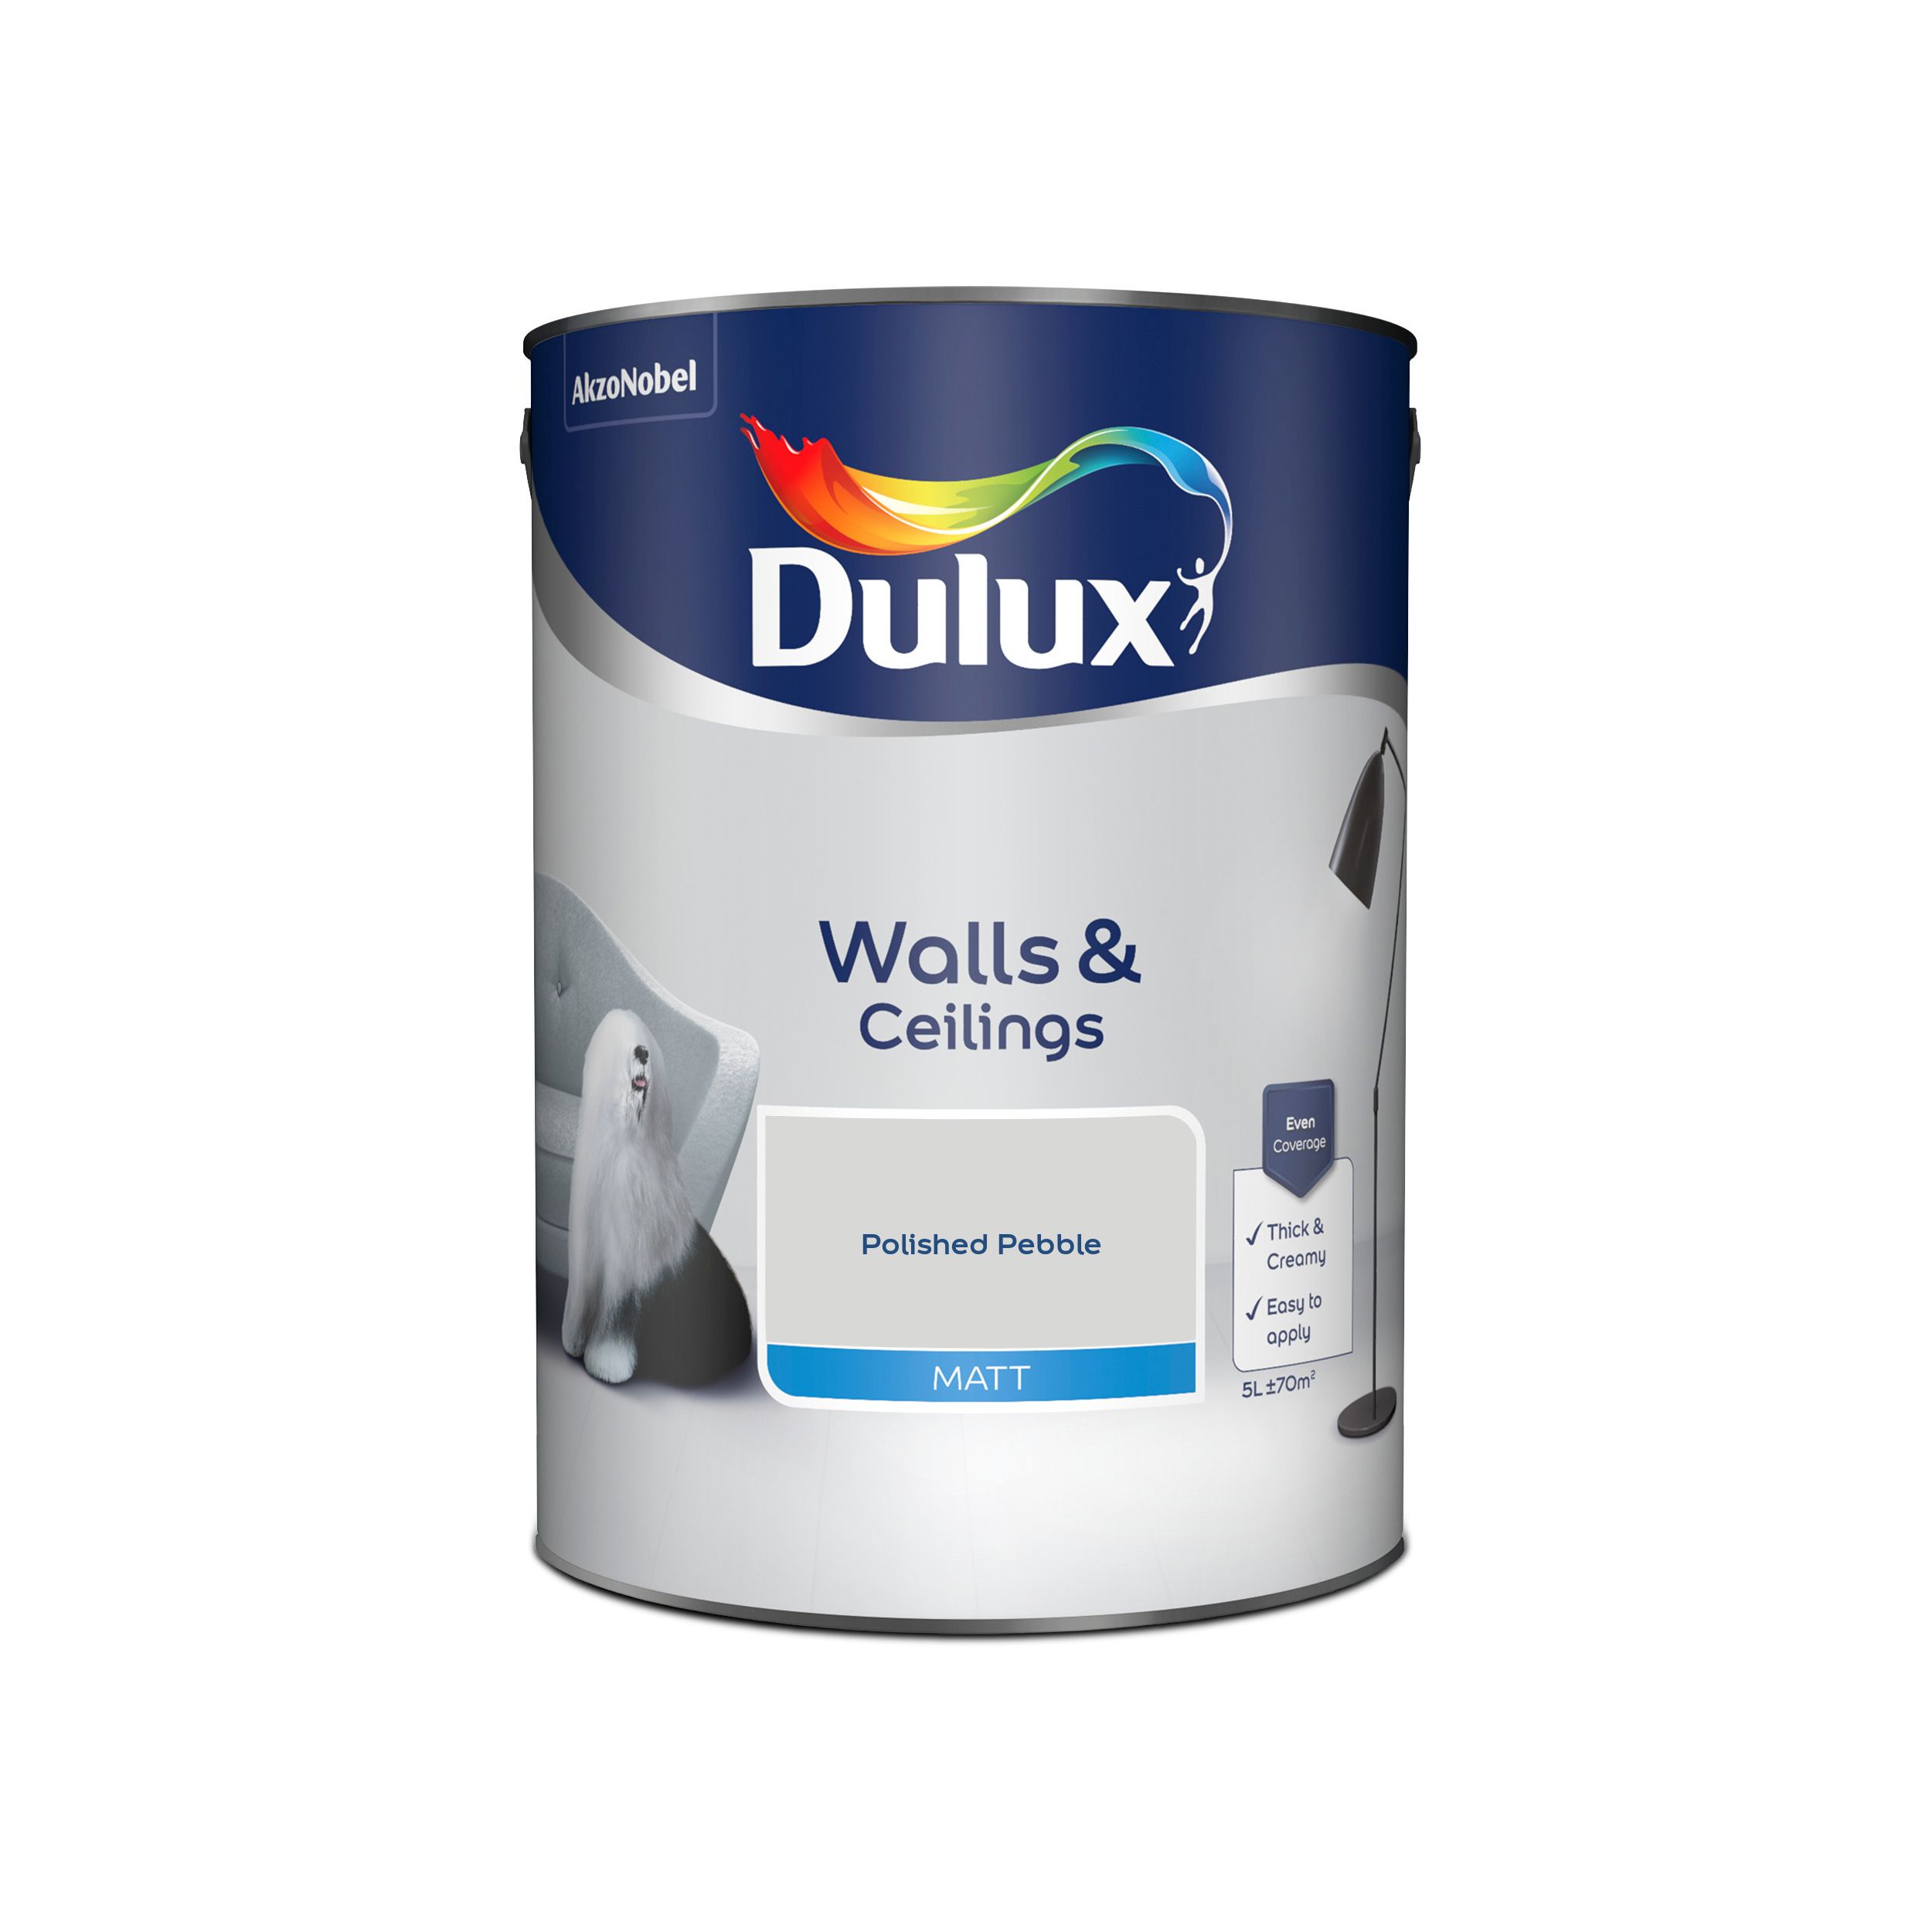 Dulux Walls & ceilings Polished pebble Matt Emulsion paint, 5L